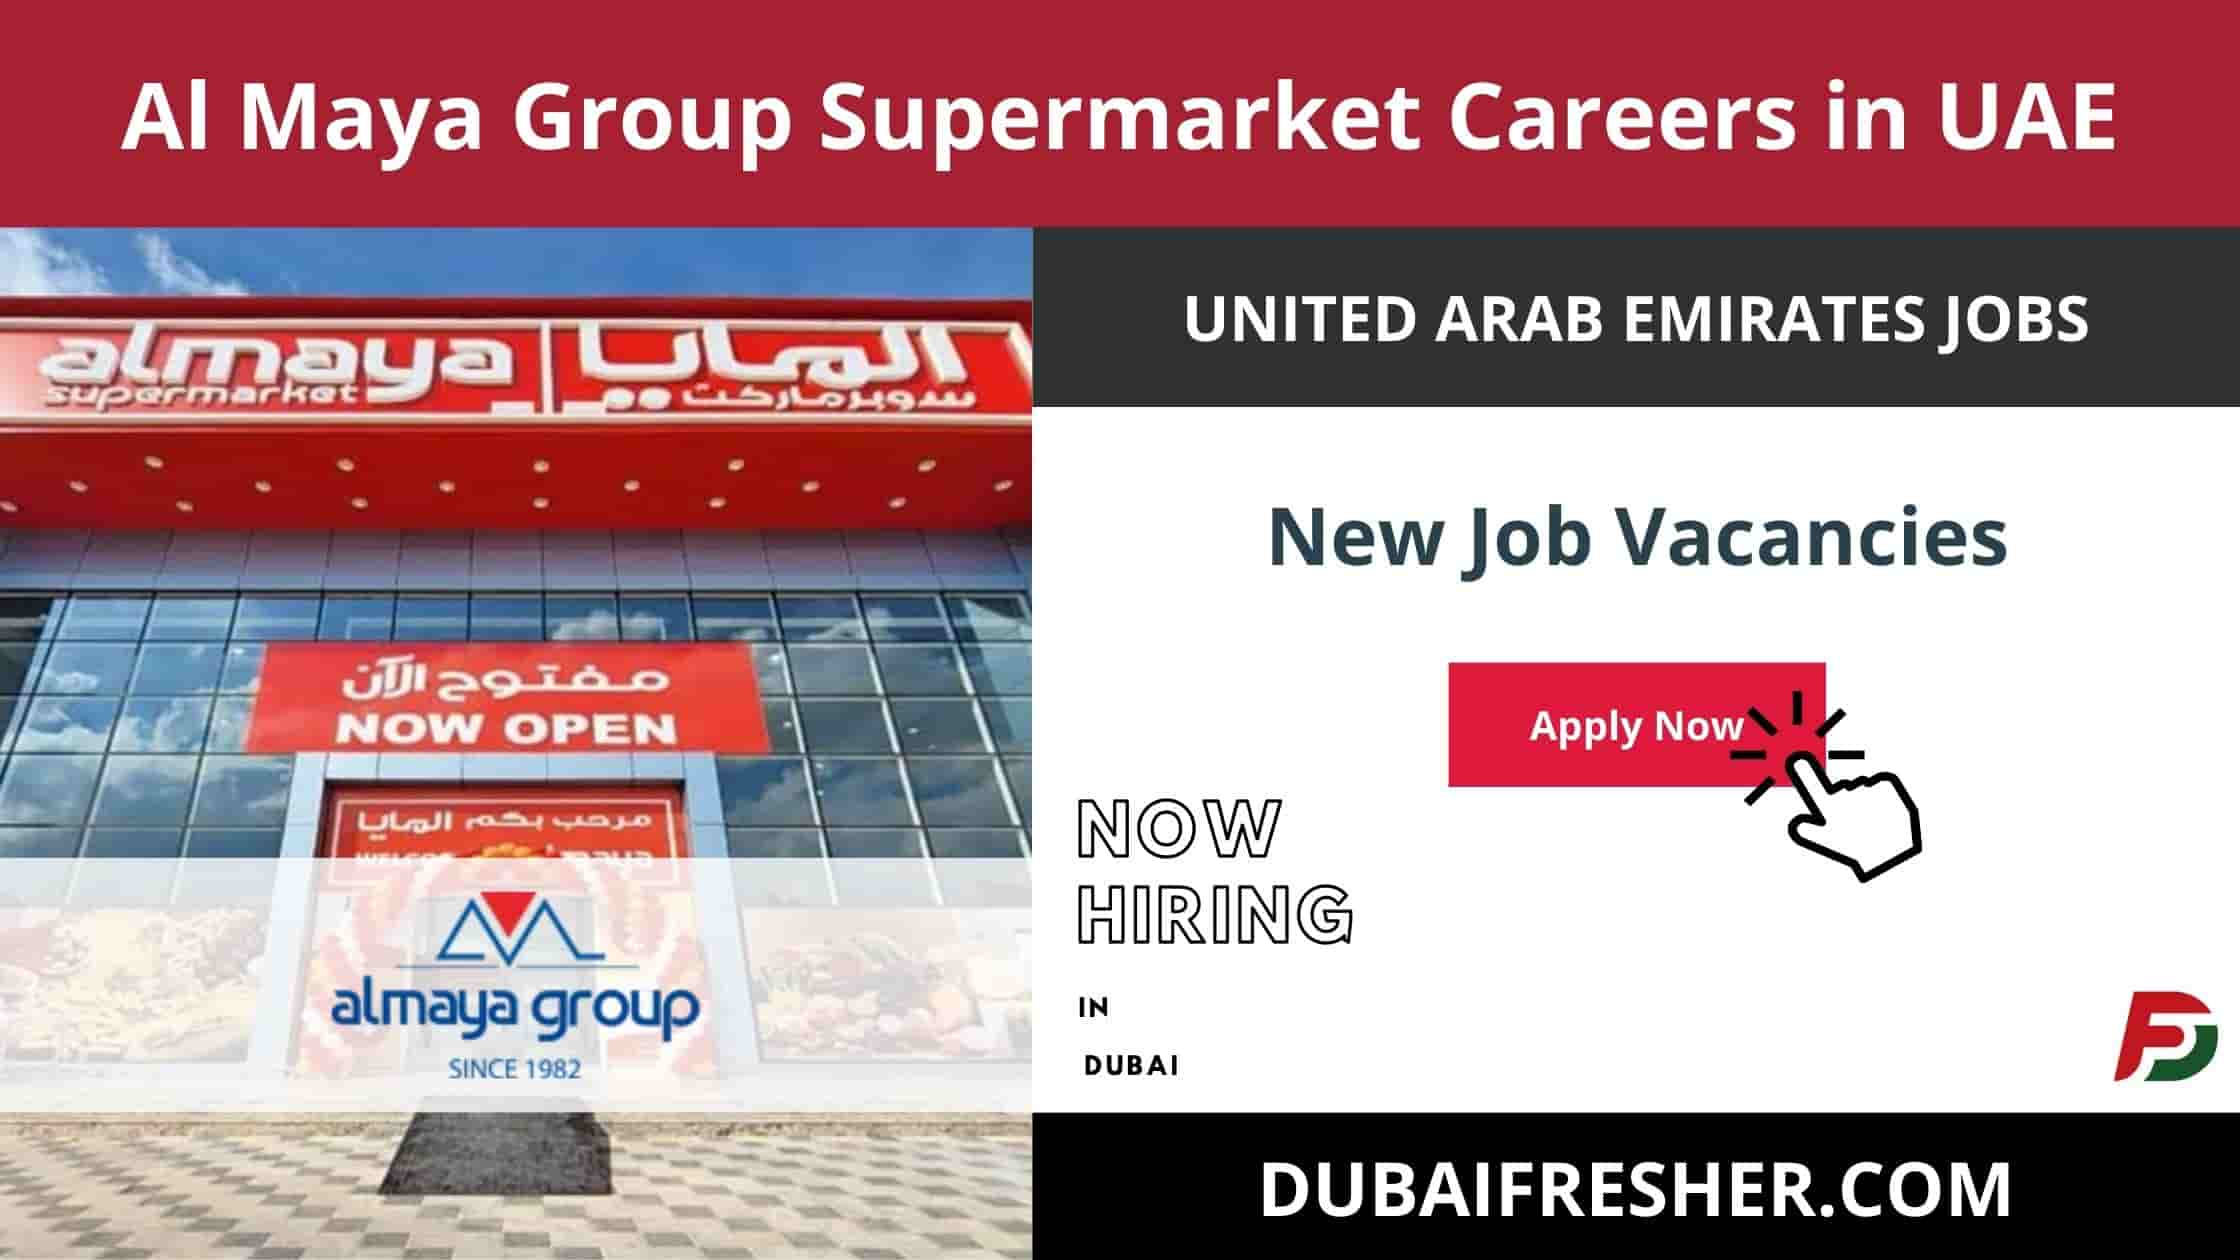 Al Maya Group Supermarket Careers in UAE